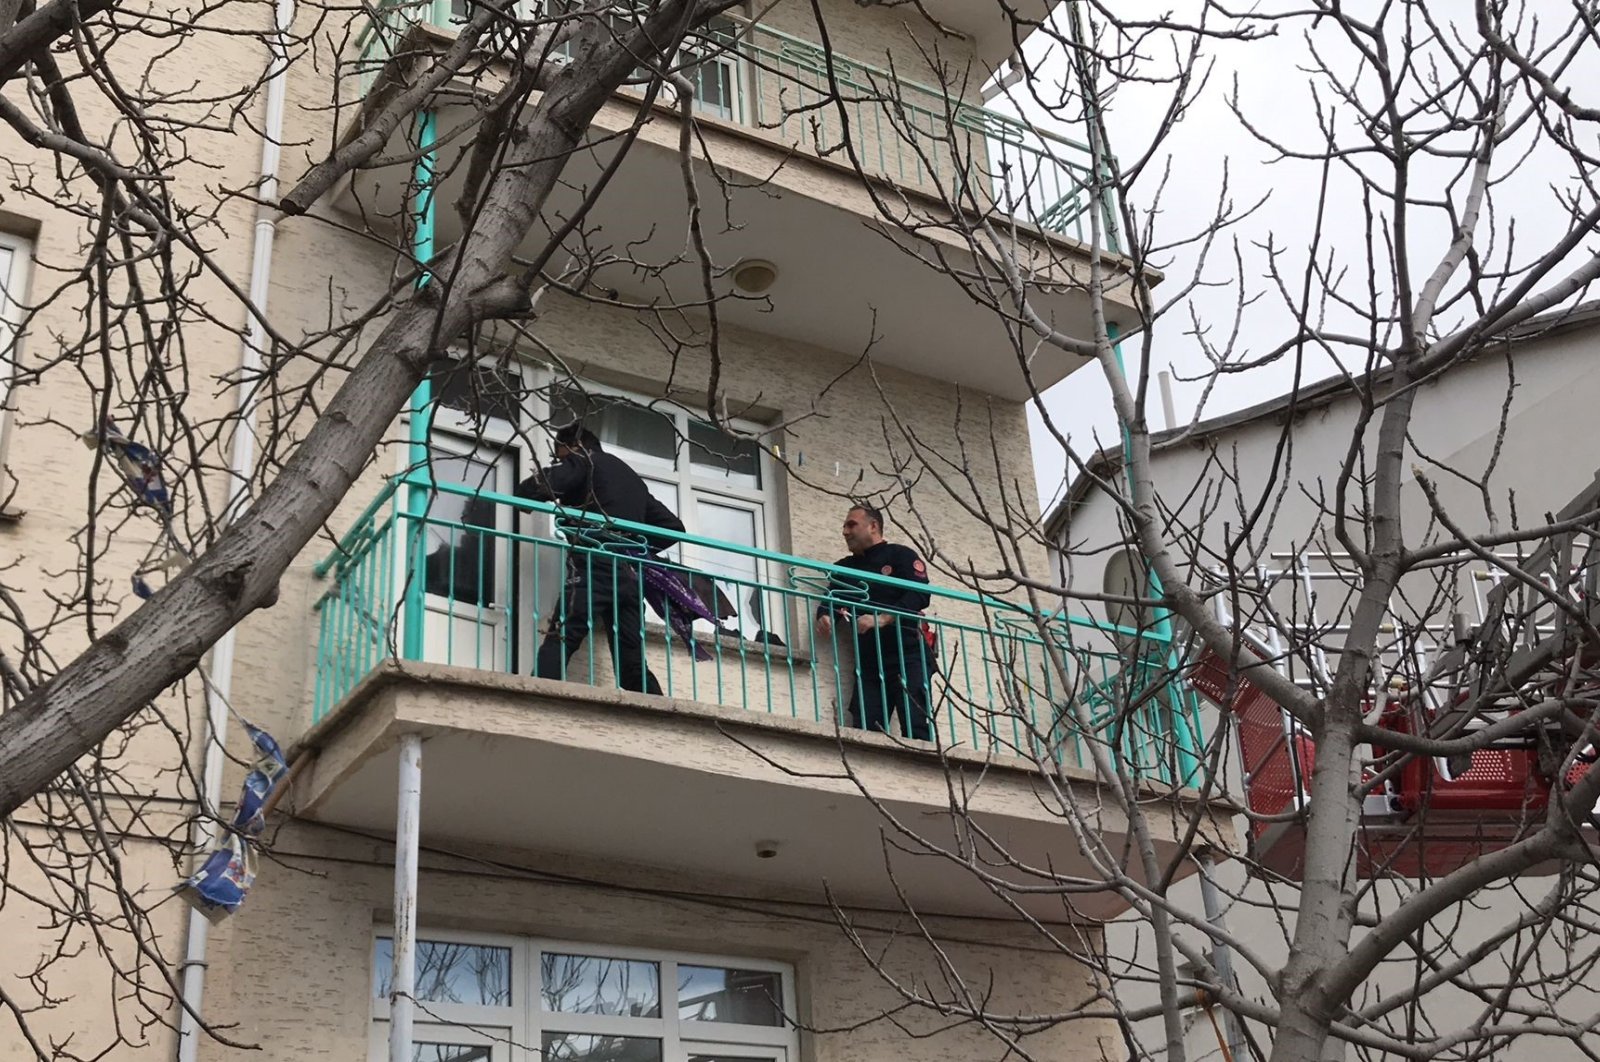 Pembunuhan-bunuh diri merenggut nyawa keluarga beranggotakan 6 orang di Elazığ Türkiye